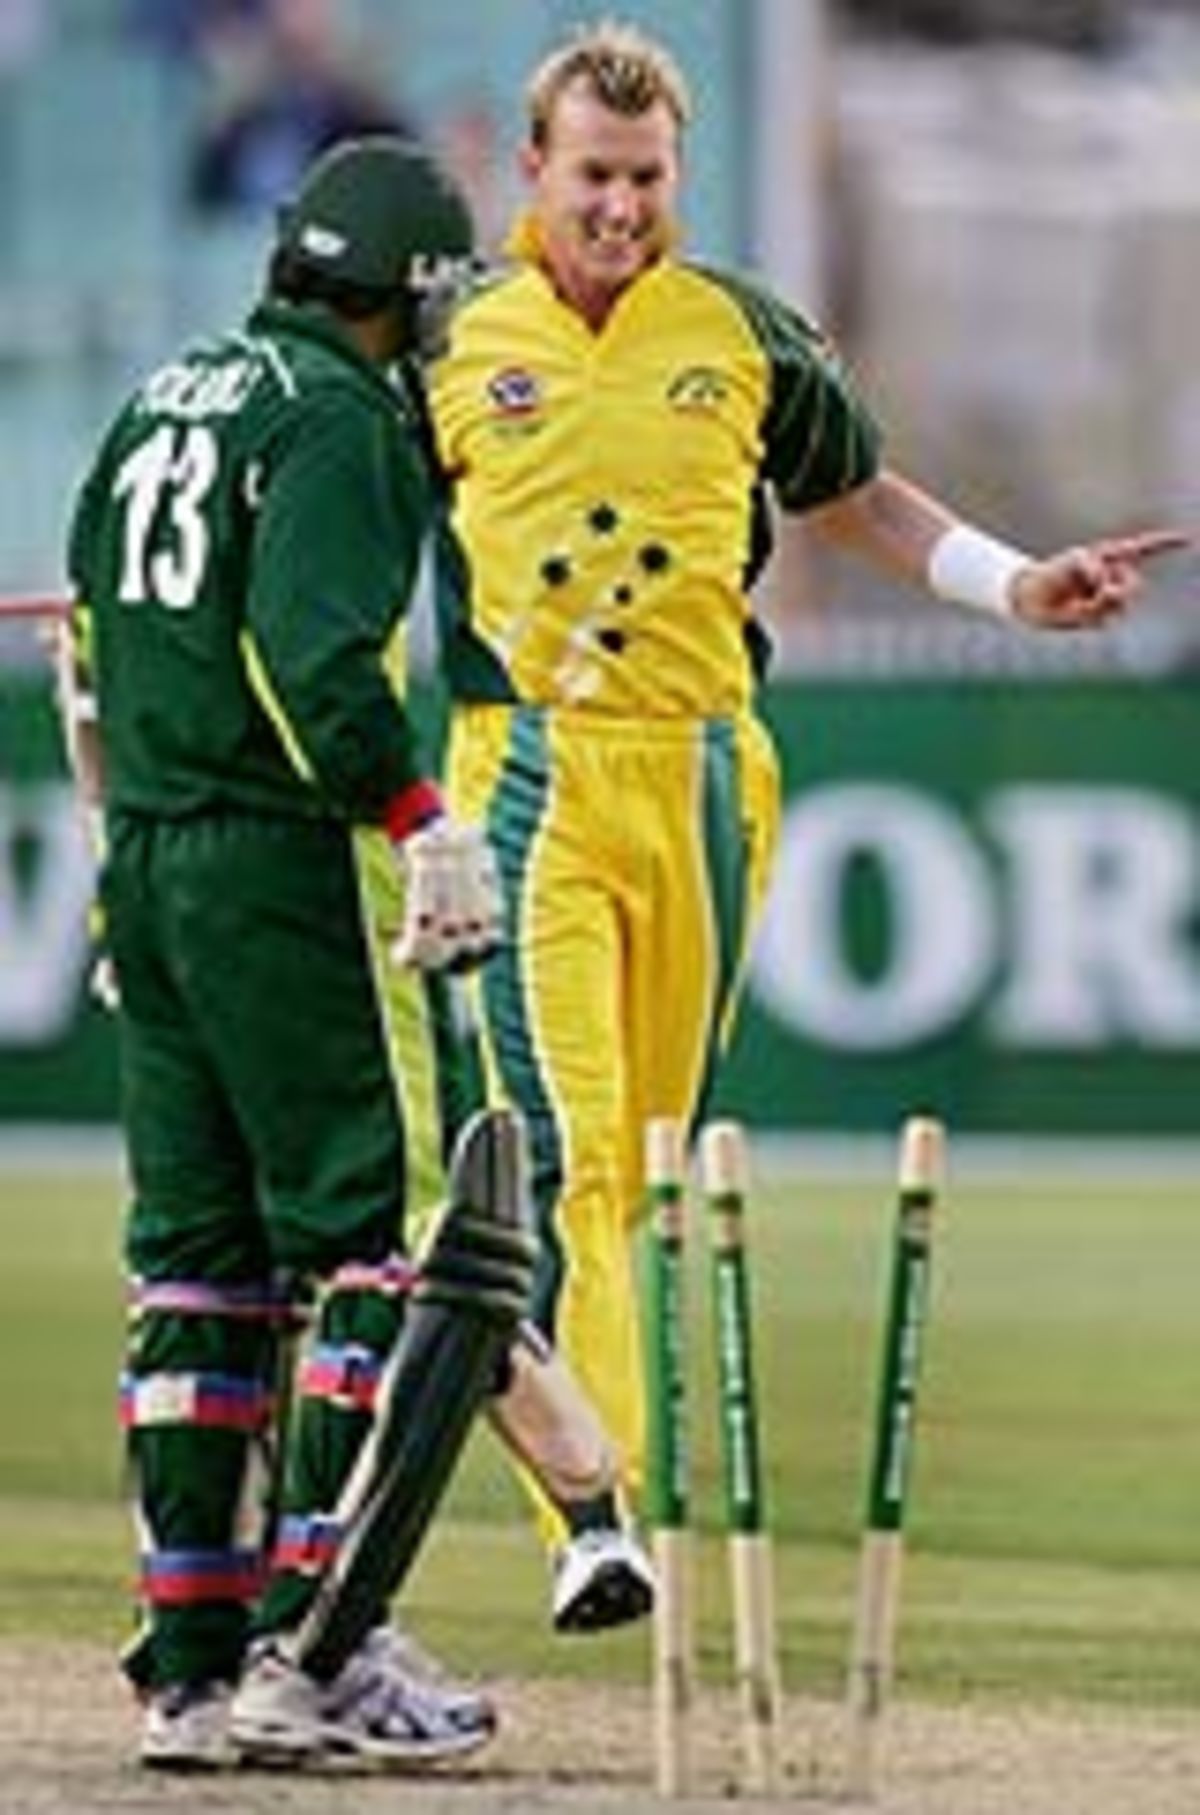 Brett Lee castles Yousuf Youhana, Australia v Pakistan, 1st final, VB Series, Melbourne, February 4, 2005